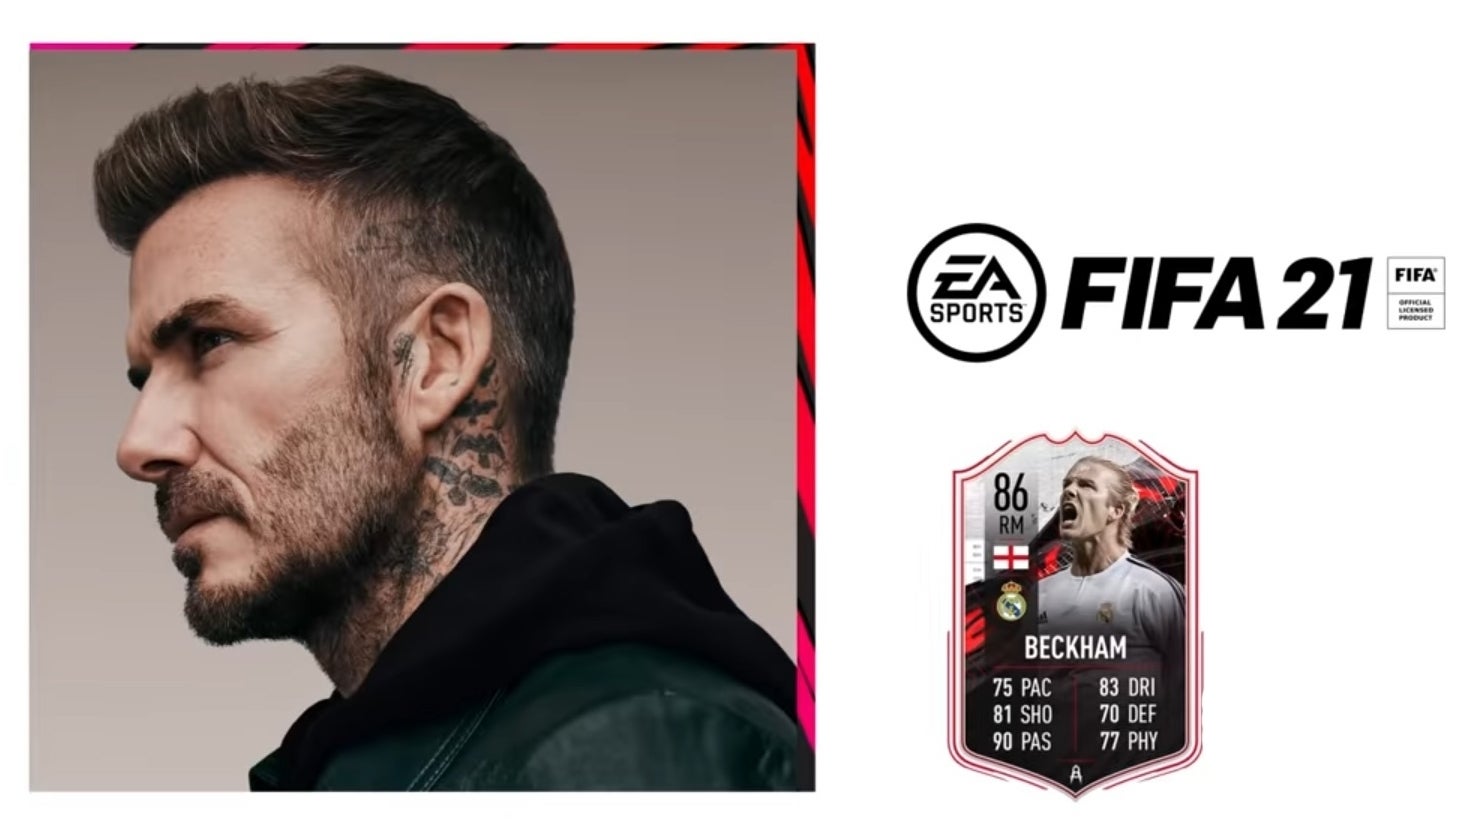 Afbeeldingen van FIFA 21 Ultimate Team-spelers krijgen gratis David Beckham-kaart